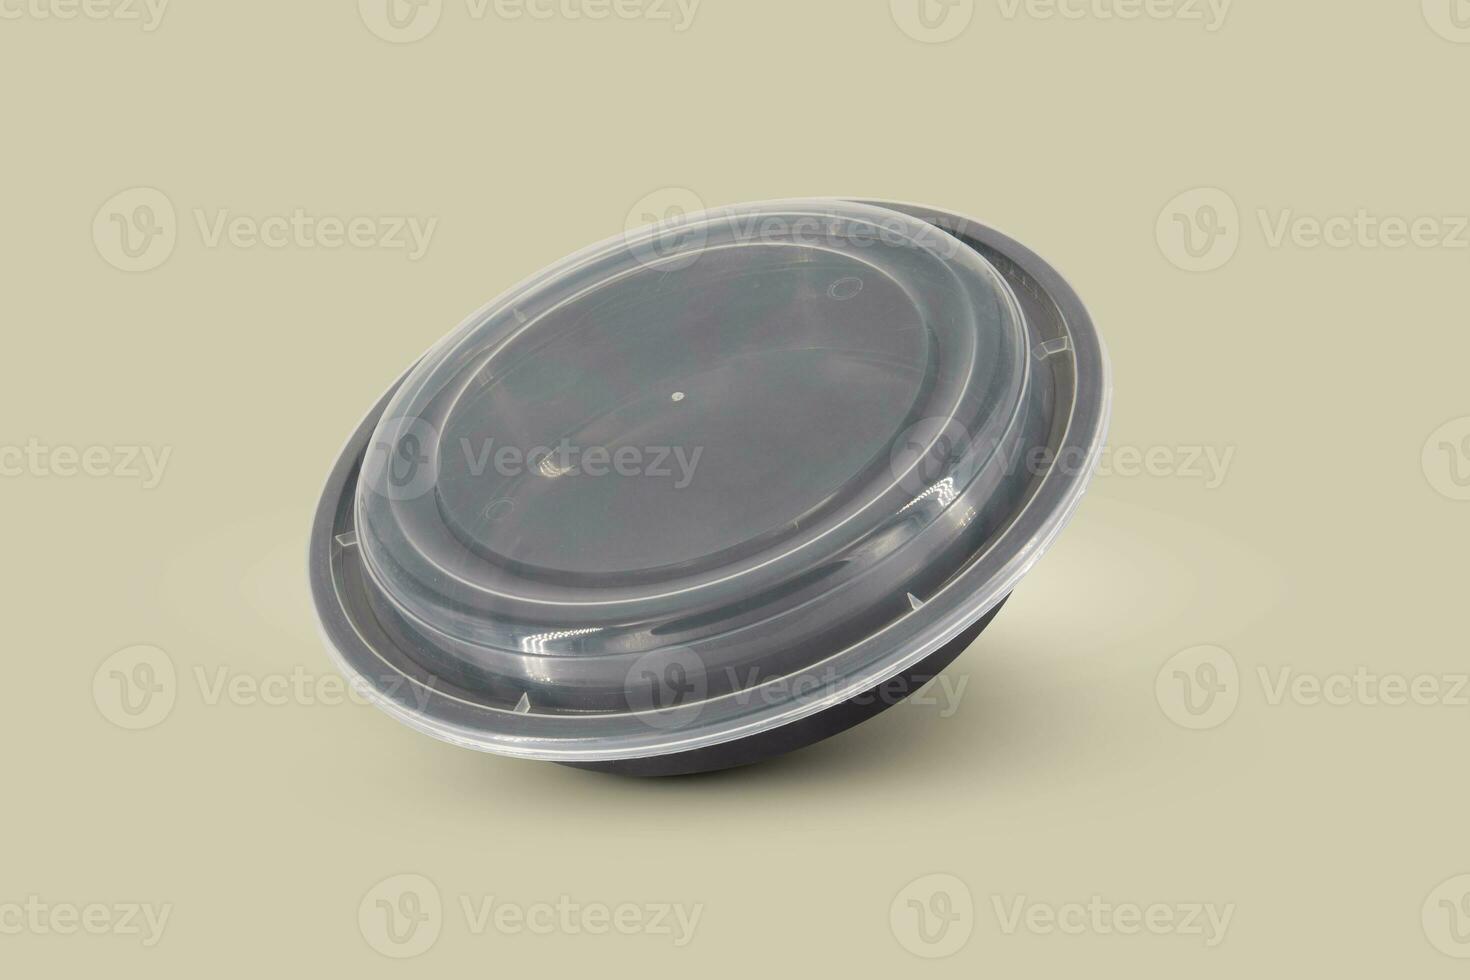 schwarz Plastik Essen Behälter mit transparent Deckel und Weiß Karton Etikette foto